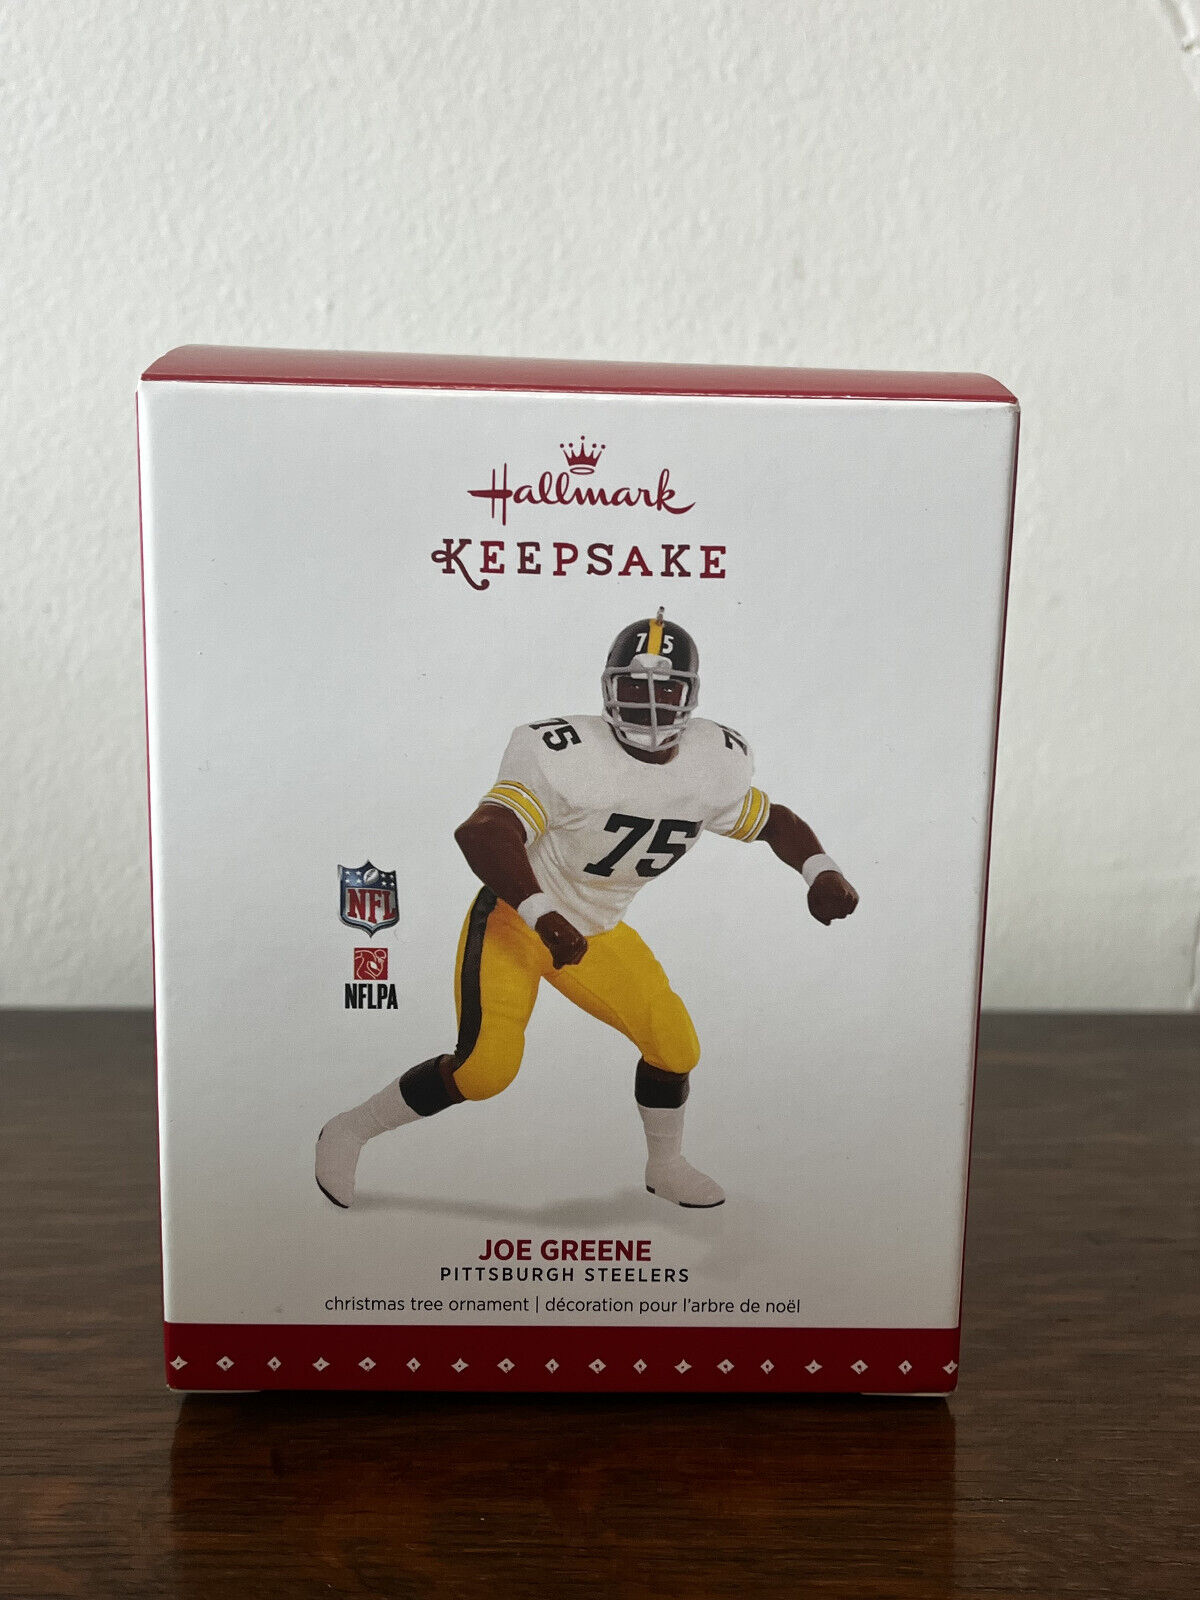 2015 Hallmark Keepsake Ornament Joe Greene Pittsburgh Steelers NFL Football